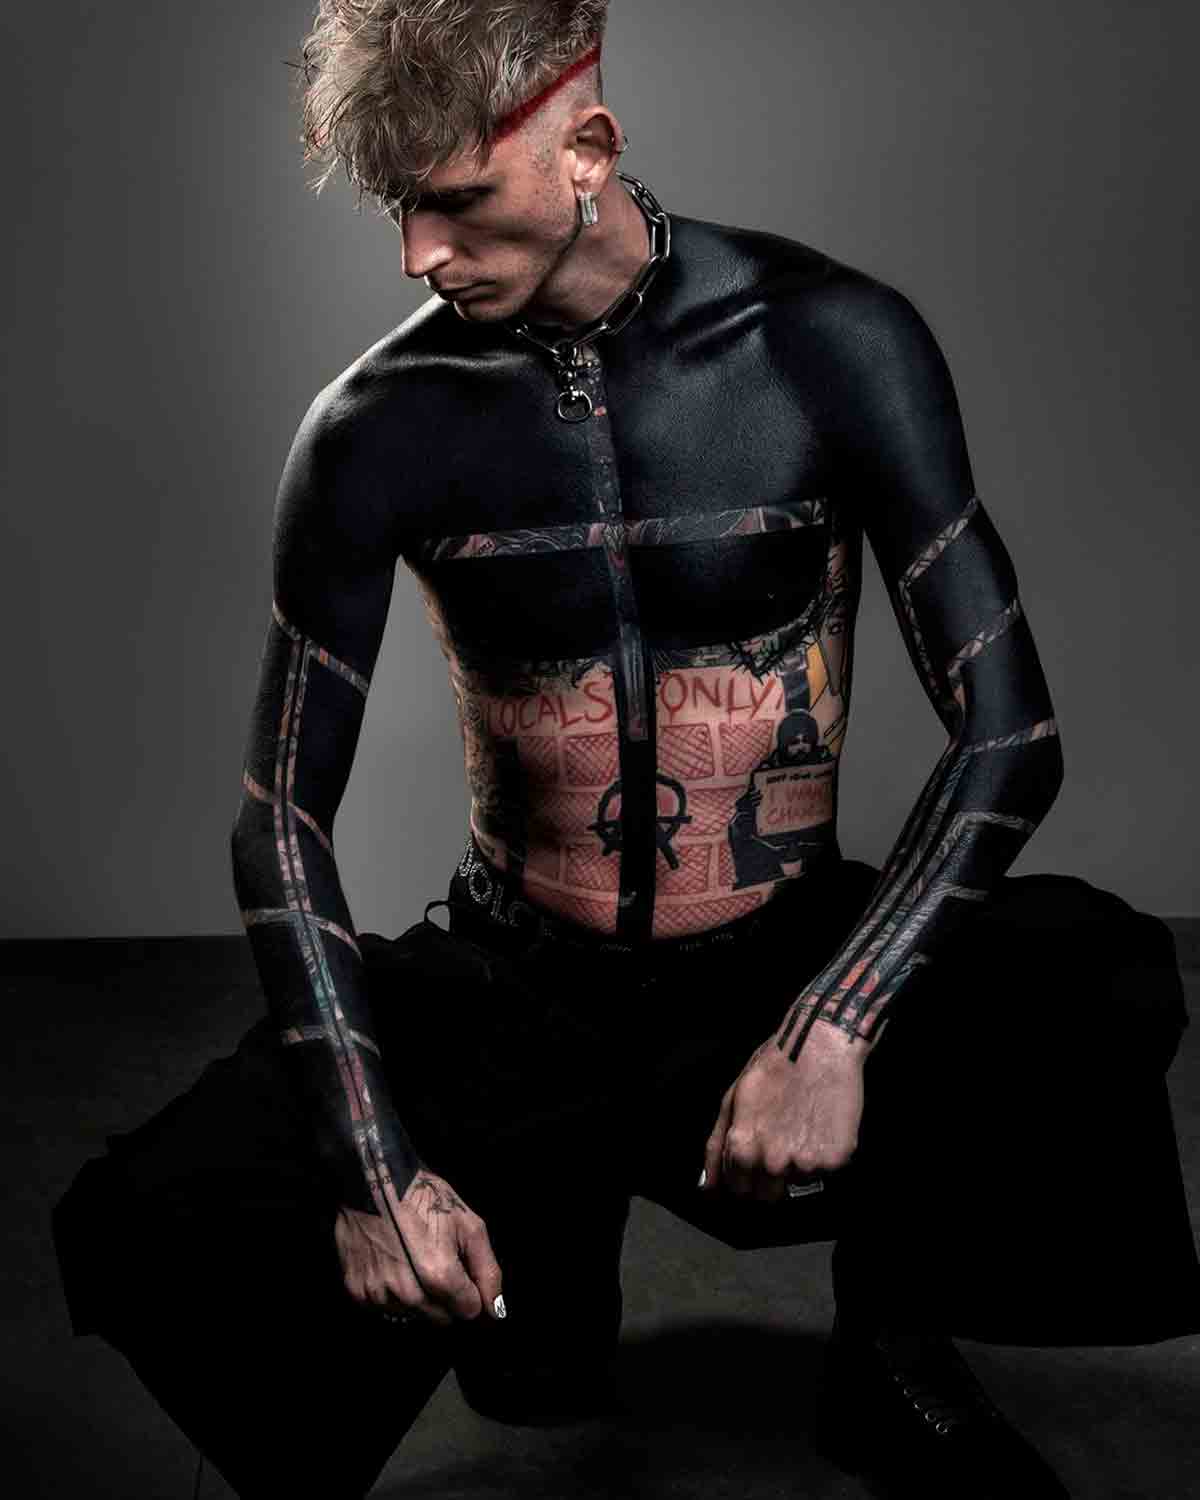 noivo de megan fox estreia nova tatuagem chocante cobrindo toda a parte superior do corpo em black ink